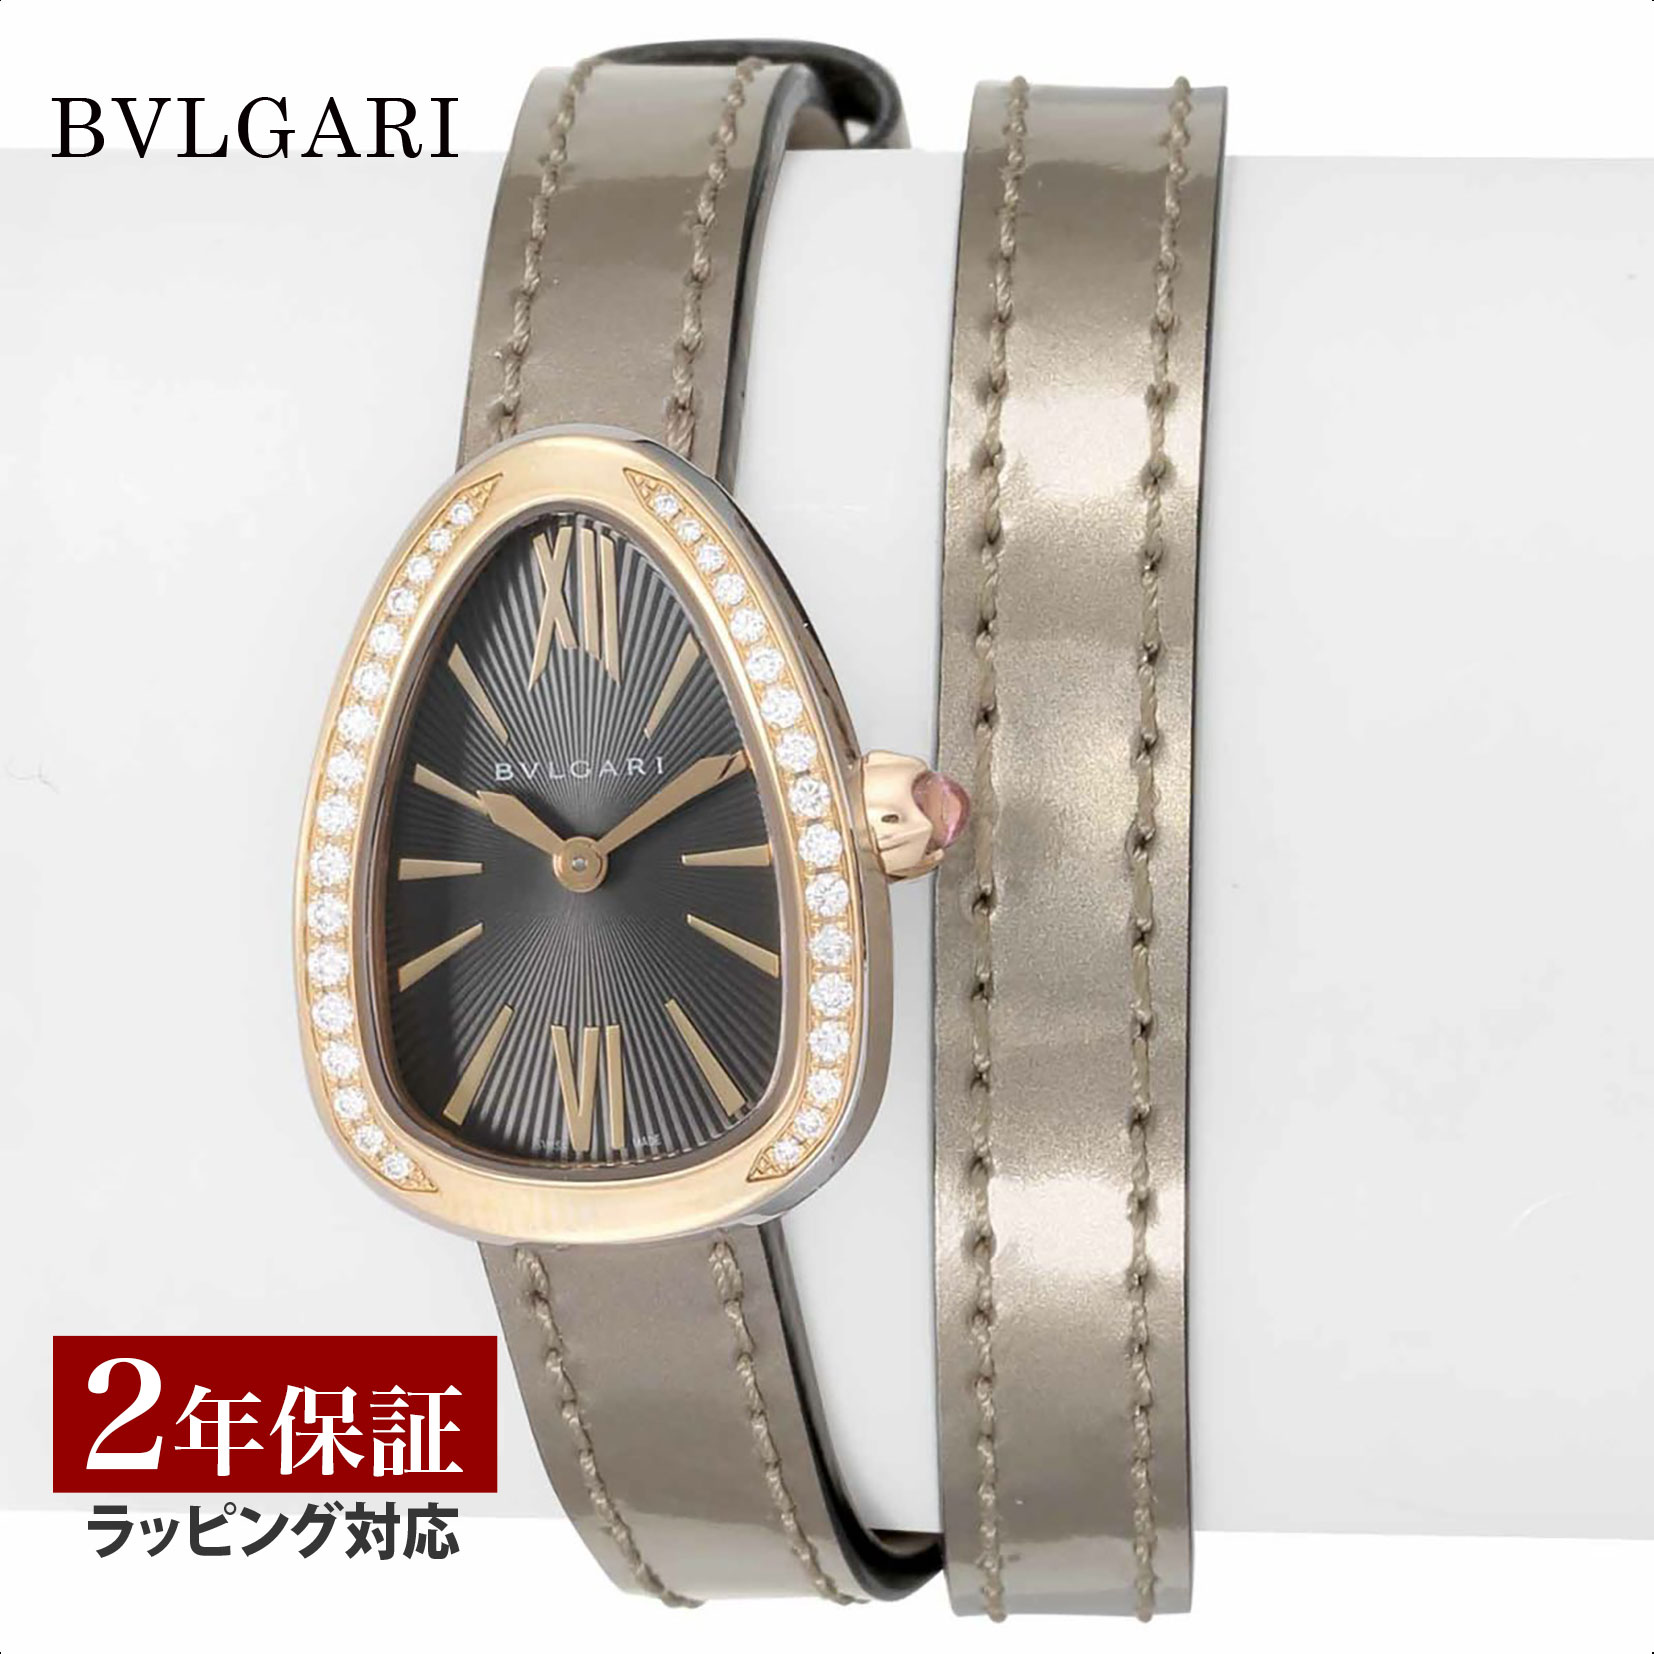 BRAND INFORMATION ブルガリ BVLGARI Serpenti セルペンティ クォーツ レディース グレー SP27C6SPGDL 時計 腕時計 ブランド 1884年、イタリア・ローマにて創業。イタリアが世界に誇るジュエラーであると同時に、時計業界においても1977年に登場した「ブルガリ・ブルガリ」以来、その躍進はとどまることをしりません。 男女種別 レディース モデル SERPENTI (セルペンティ) カラー グレー ケース素材 K18/ステンレススチール ベルト素材 カーフ革 風防 サファイヤガラス ムーブメント クォーツ 防水性能 日常生活防水 管理コード BVS-SP27C6SPGDL ケース径 27×20×8(mm),25(g) 腕周り 11〜15.5(cm) 生産国 スイス 保証年数 2 付属品 箱 / 取扱説明書 / 保証書 備考 ※当社では、スタジオでストロボを使用して撮影しております。また、お客様のモニターを通してご覧になって頂いている為、実物を蛍光灯や自然光の下でご覧になった場合と色味が異なる場合がありますので、ご理解の上ご購入頂きますようお願い致します。 ※付属品は仕様変更等により、若干異なることがございます。 類似商品はこちら1,230,000円764,000円764,000円576,000円654,000円686,000円486,000円932,000円538,000円新着商品はこちら2024/5/28258,000円2024/5/28748,000円2024/5/281,075,000円再販商品はこちら2024/5/2818,700円2024/5/28107,000円2024/5/2816,800円2024/05/29 更新 PRODUCT BRAND : BVLGARI(ブルガリ) MODEL : SERPENTI (セルペンティ) REFERENCE : SP27C6SPGDL